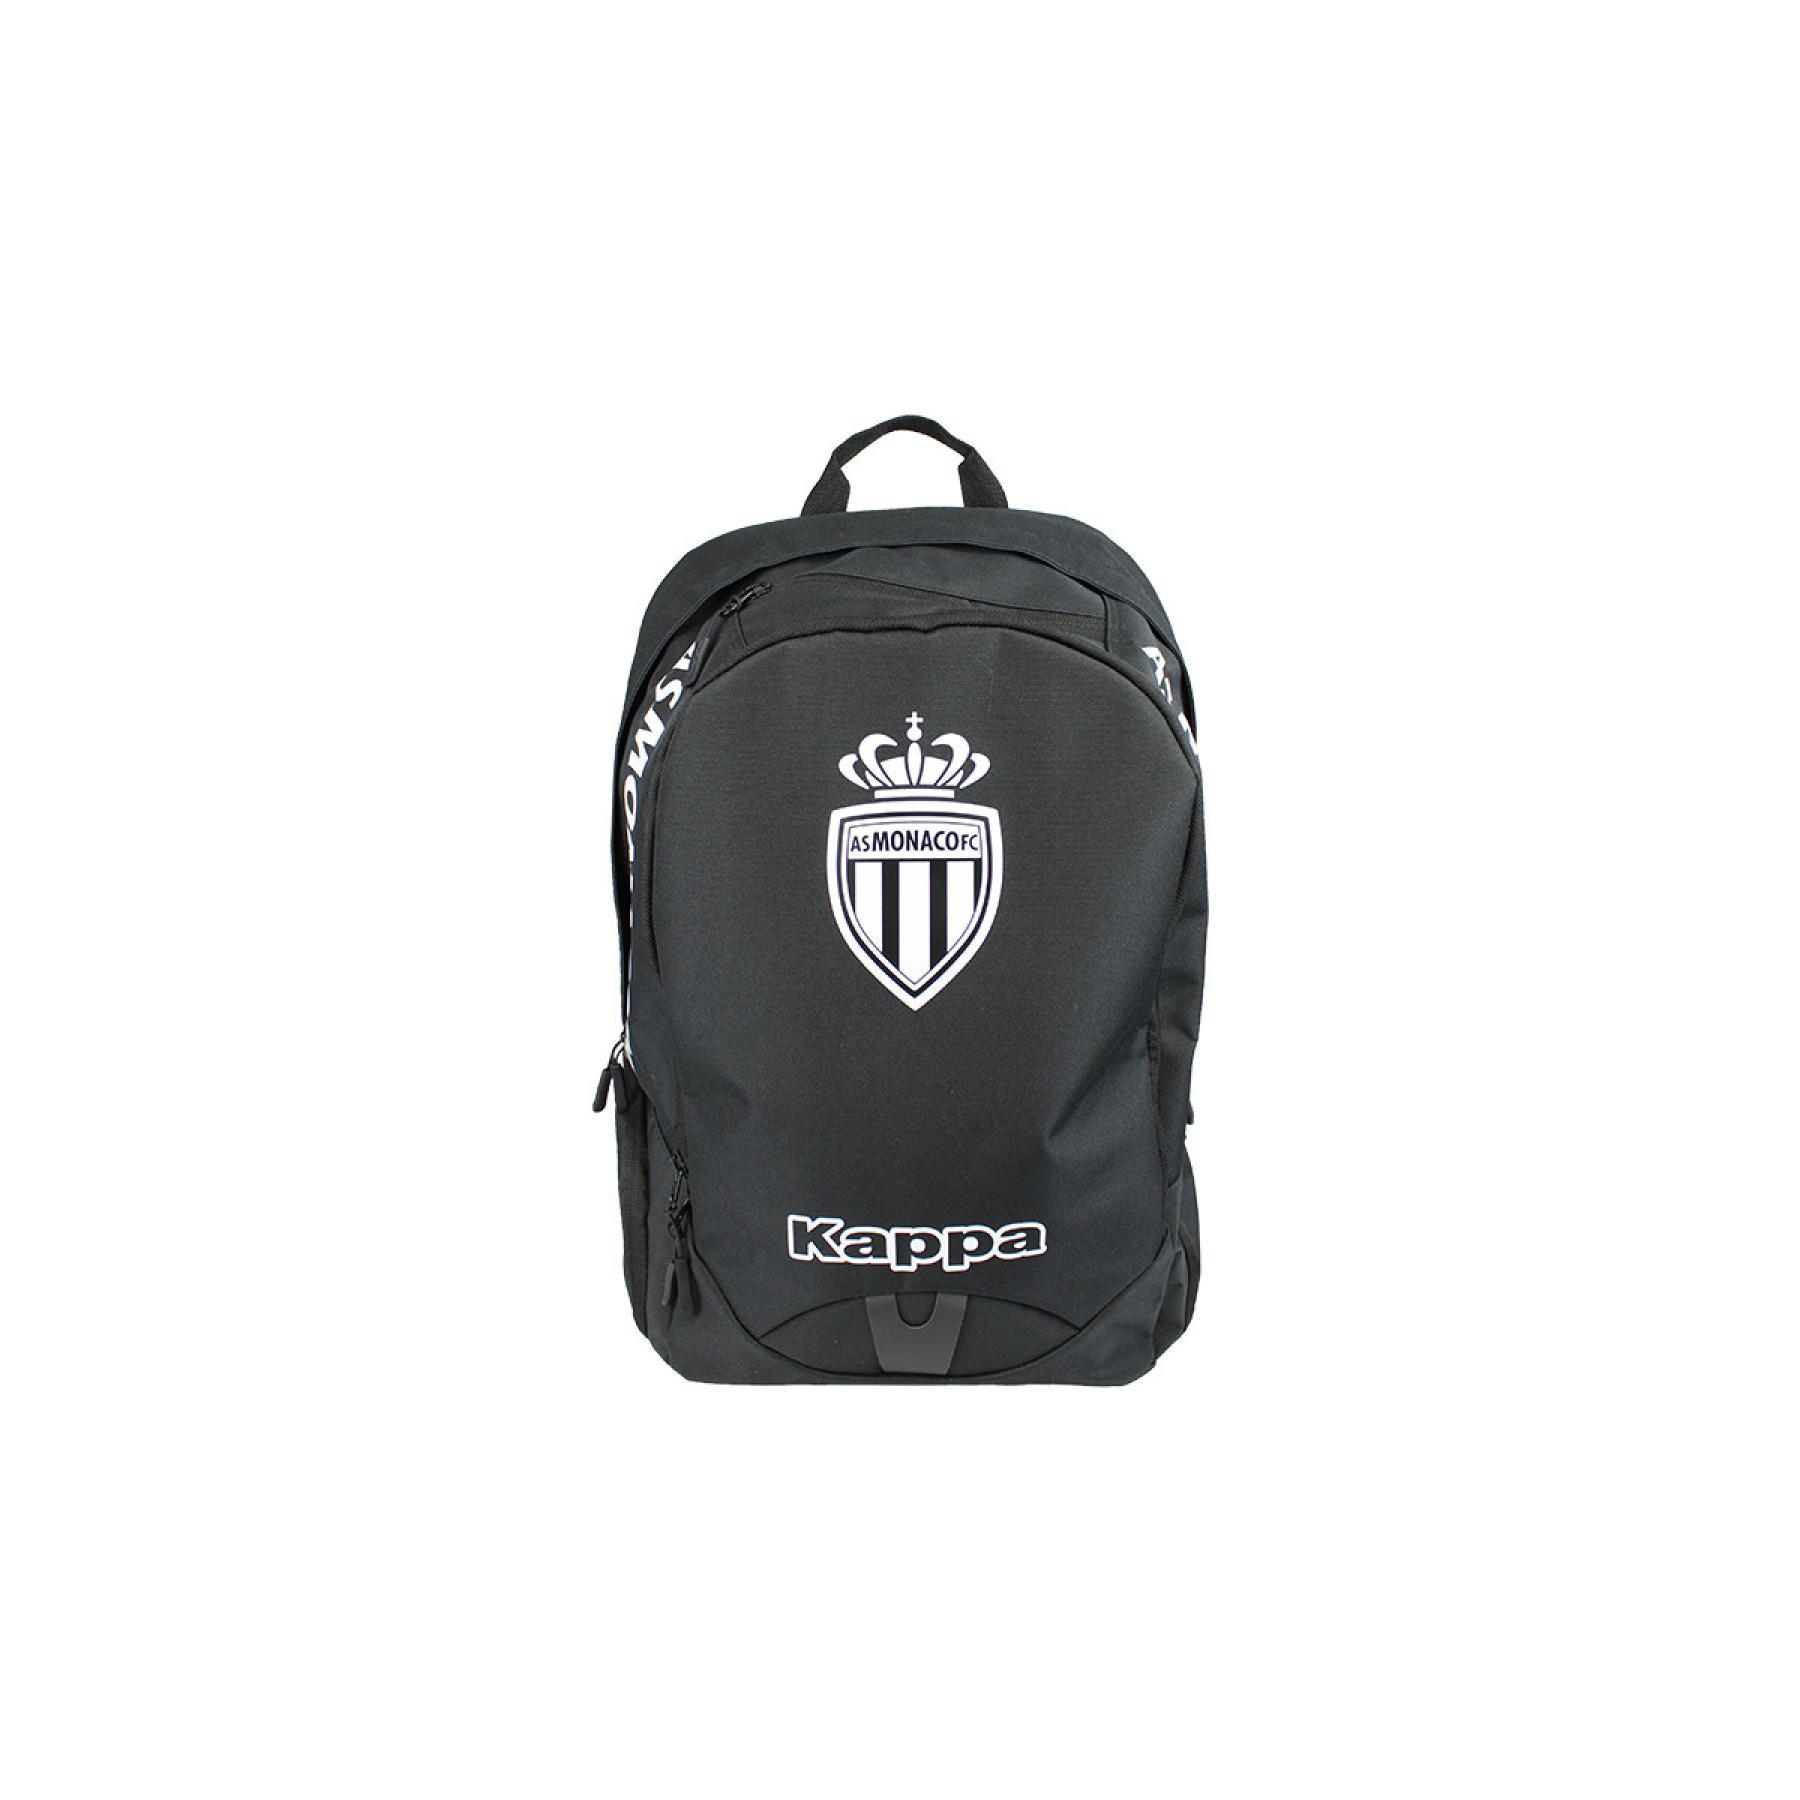 Backpack AS Monaco 2020/21 apack 3